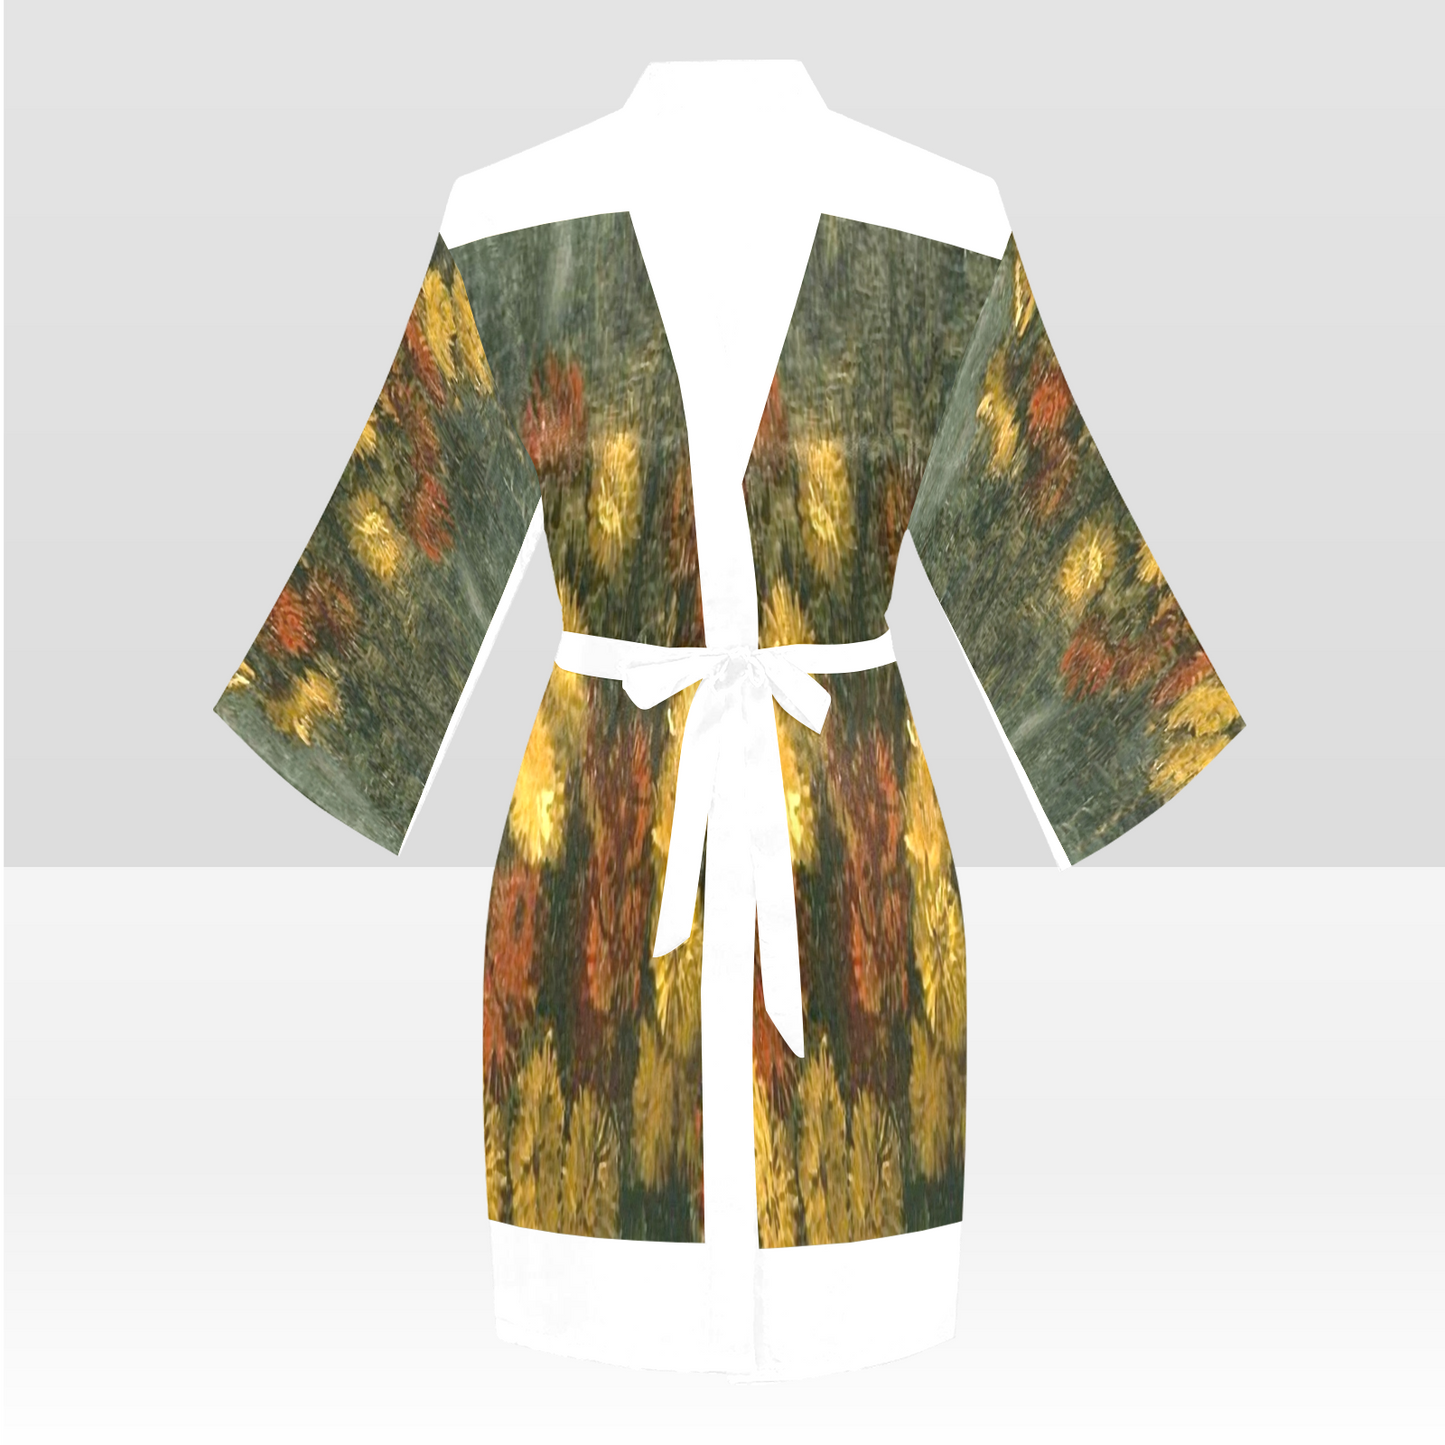 Vintage Floral Kimono Robe, Black or White Trim, Sizes XS to 2XL, Design 28